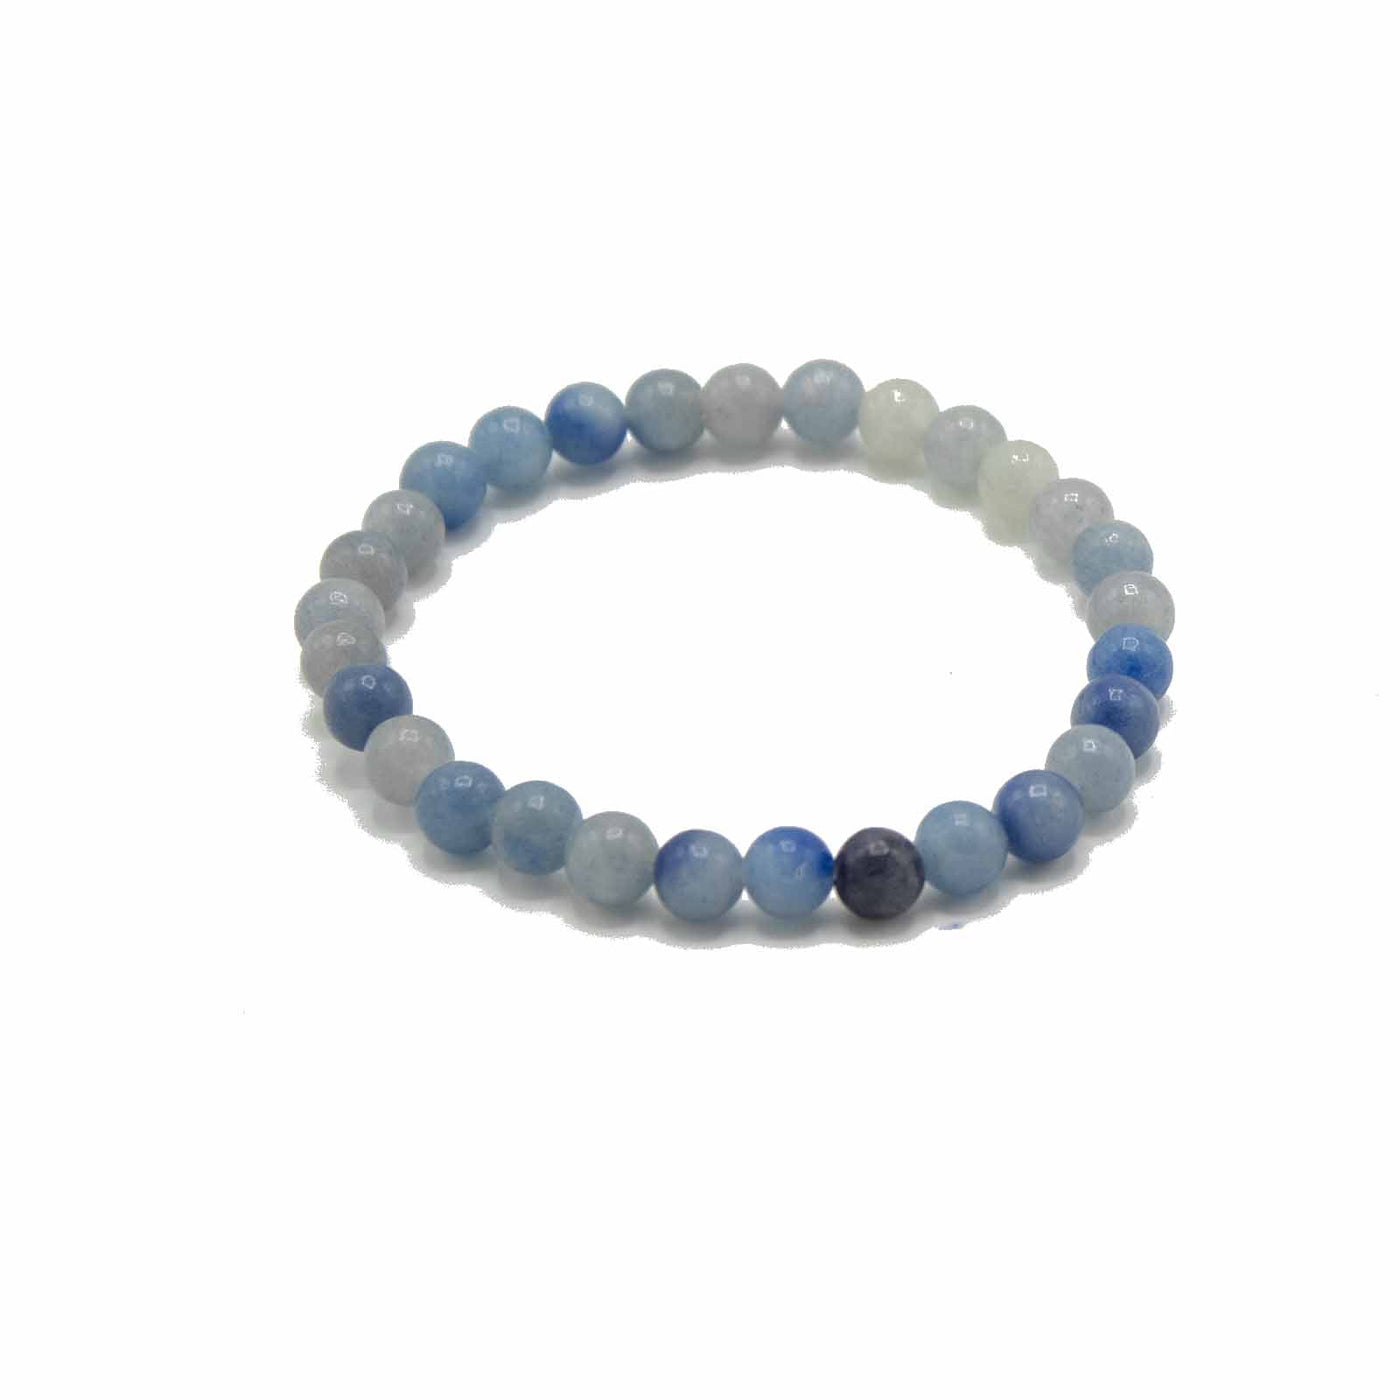 Unisex Blue Lace Agate Crystal Gemstone Bracelet.